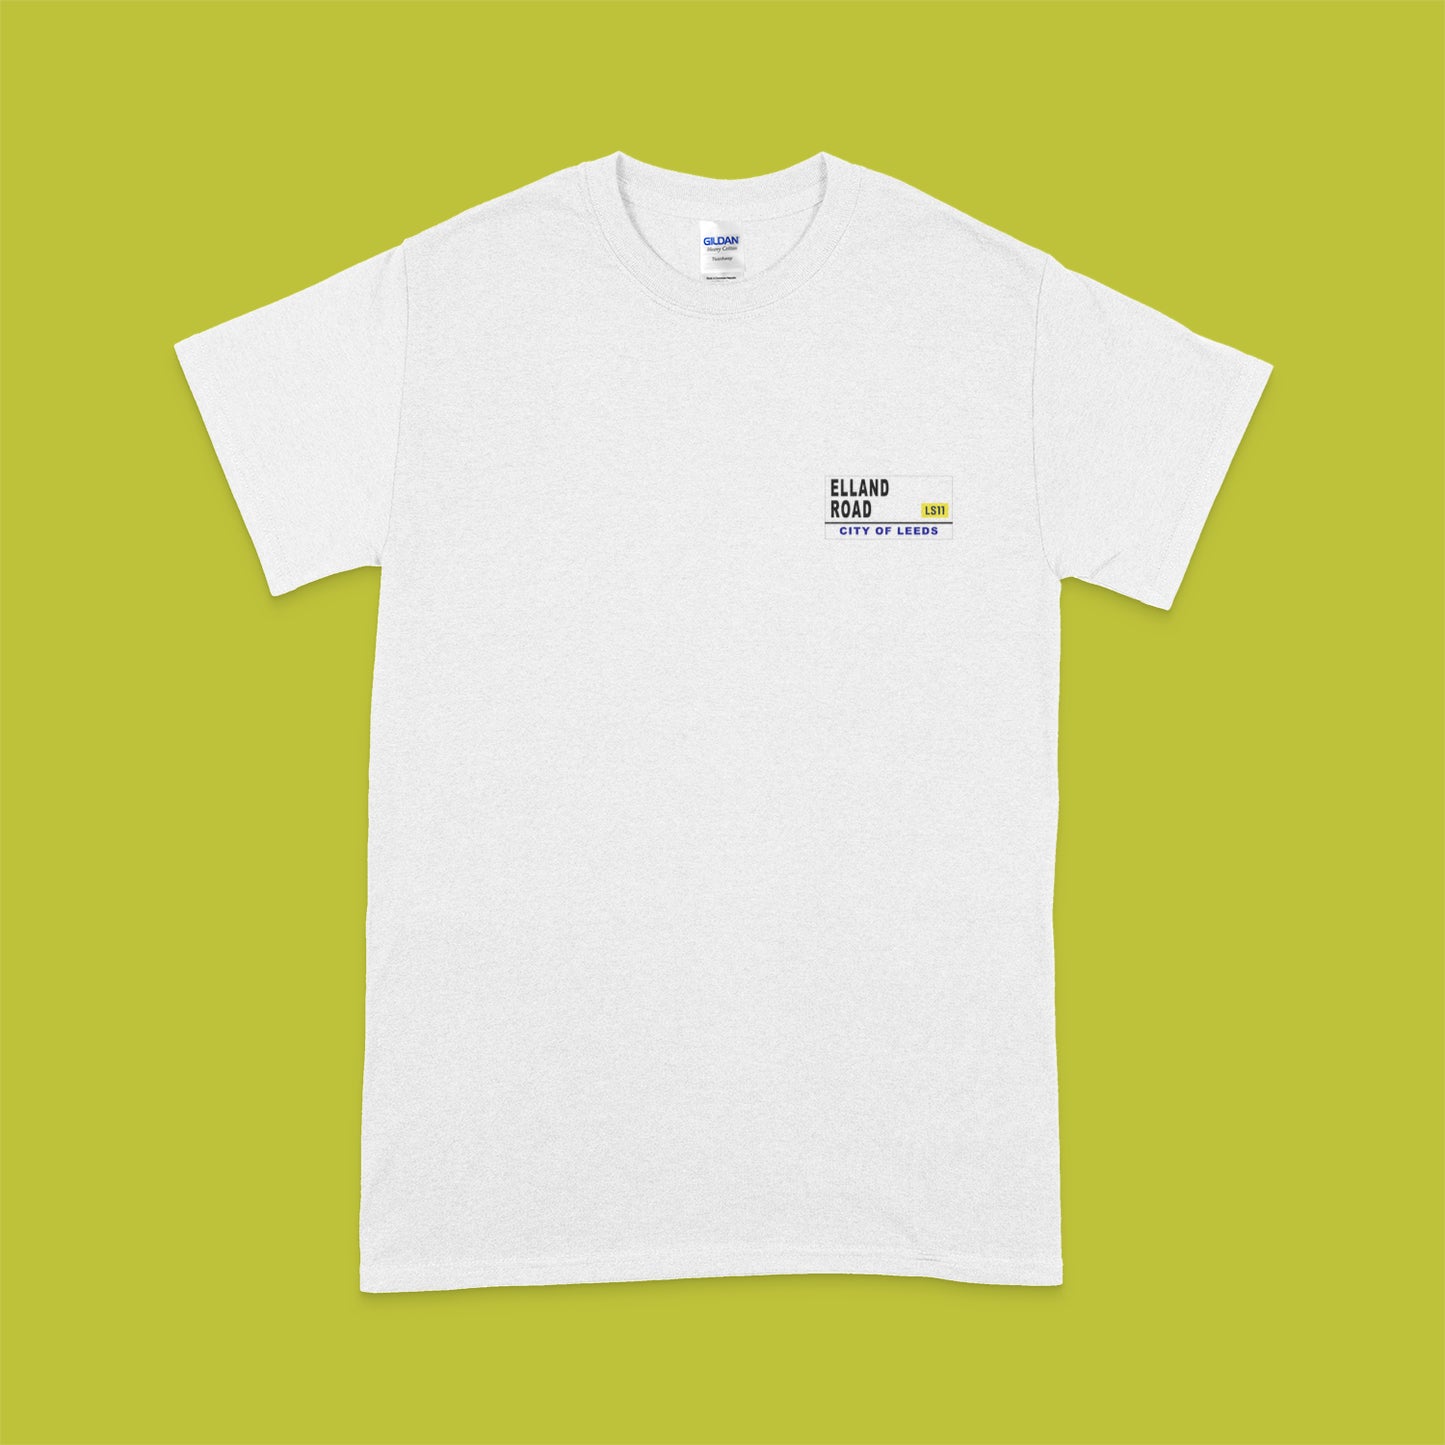 LS11 "Elland Road" Double Print - T-Shirt